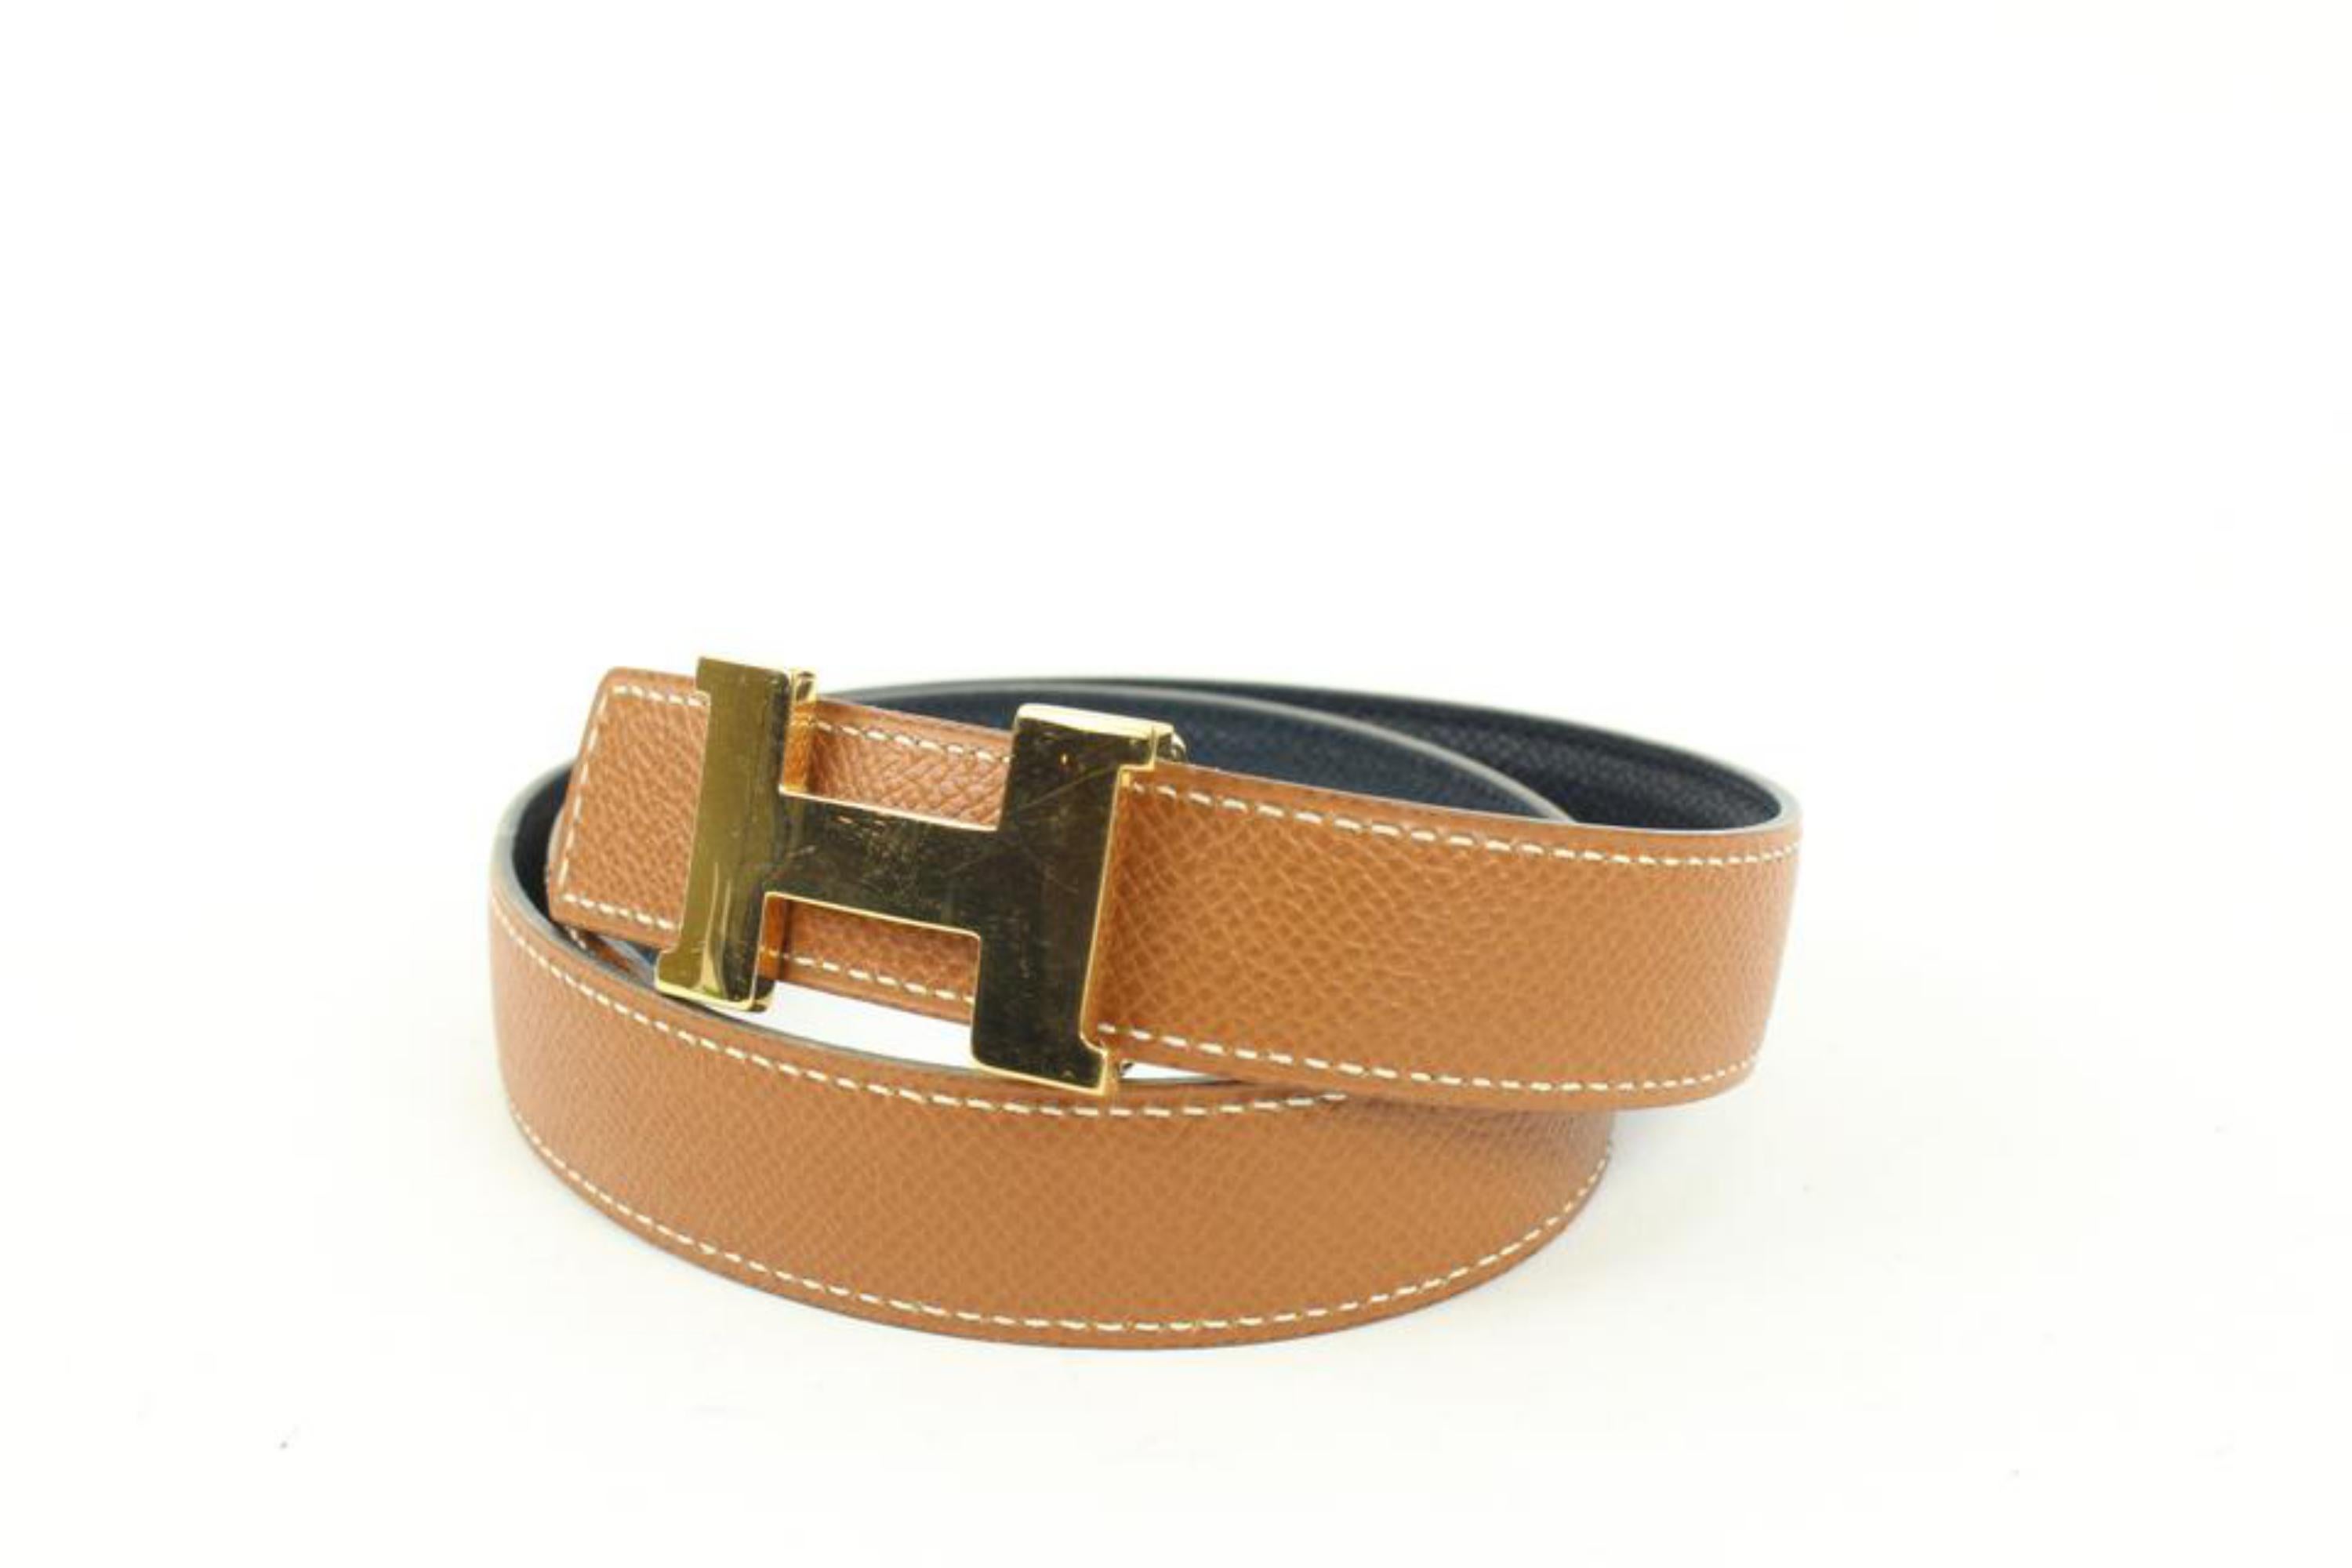 Hermès Kit ceinture 24mm marron x marine réversible avec logo H 55h128s
Code de date/Numéro de série : A dans un carré
Fabriqué en : France
Mesures : Longueur :  29.5